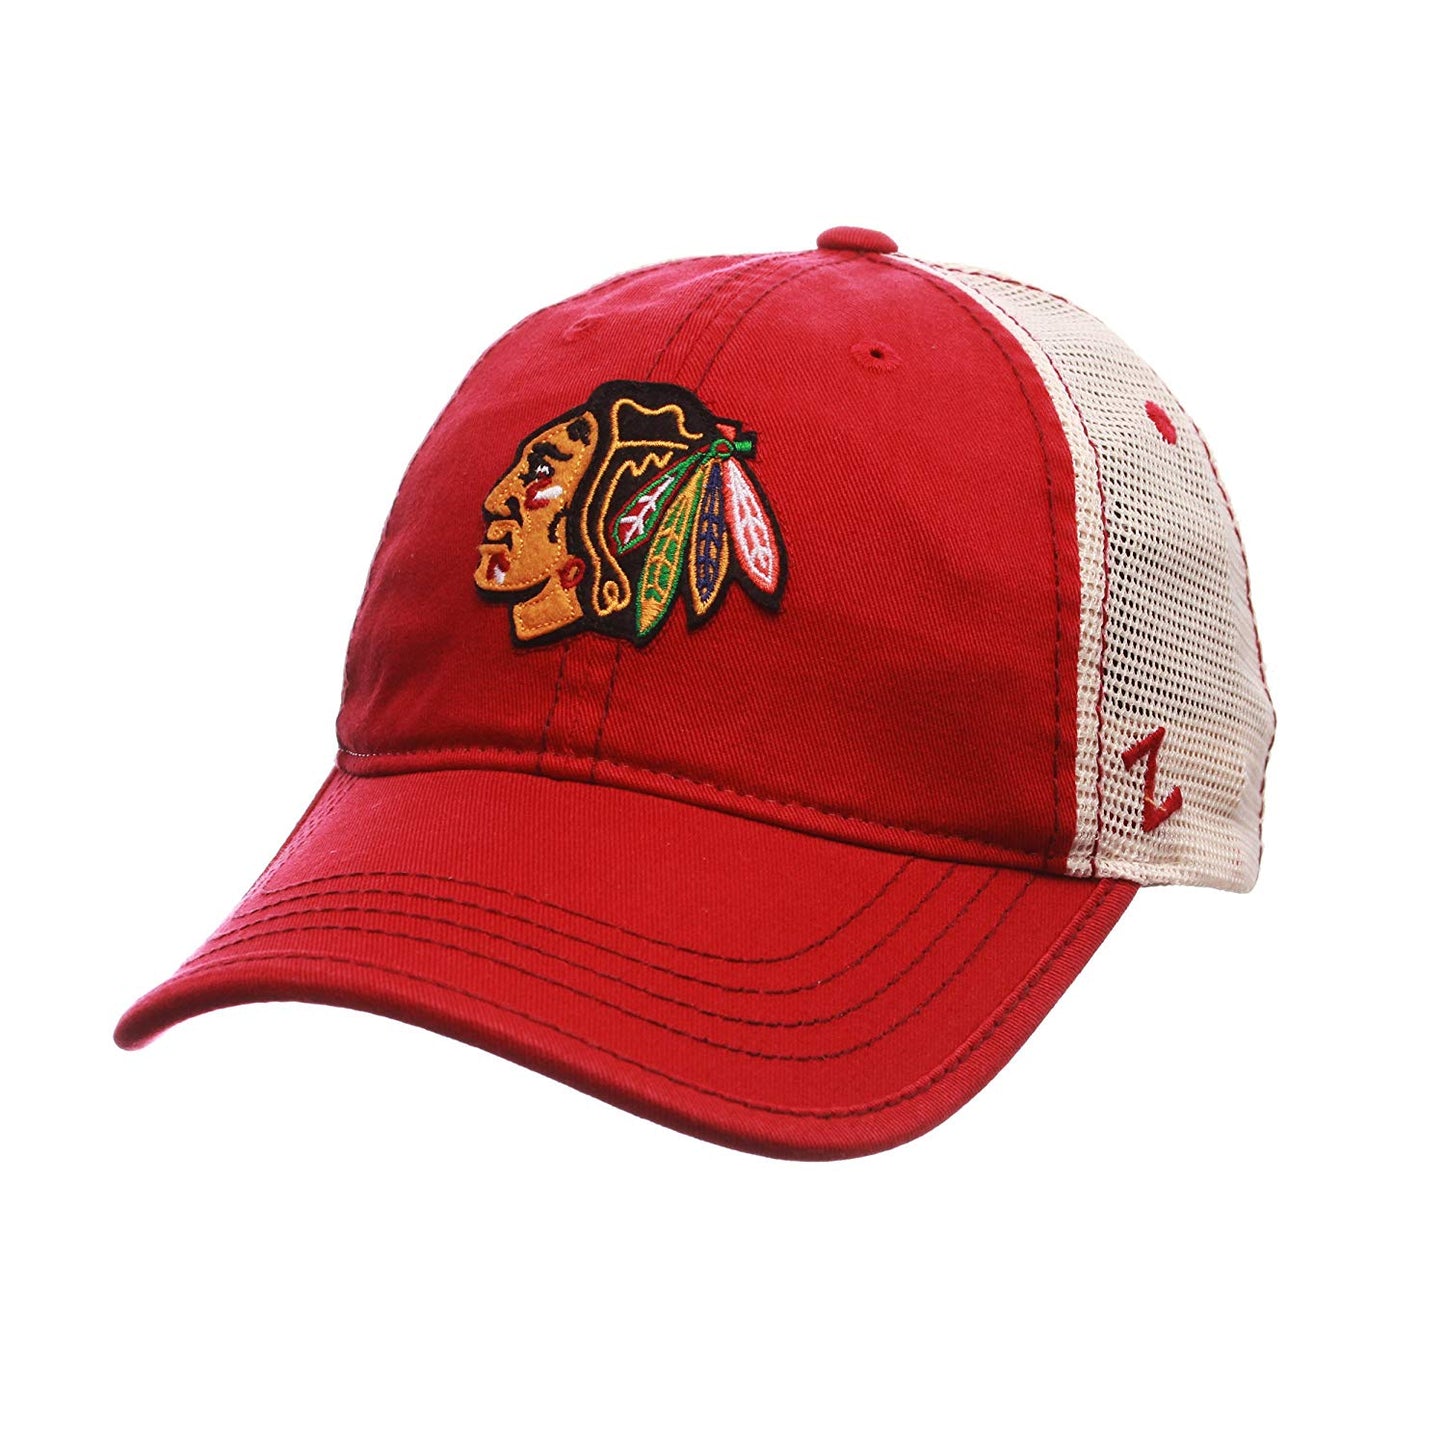 Chicago Blackhawks Men's Red Summertime Mesh Hat